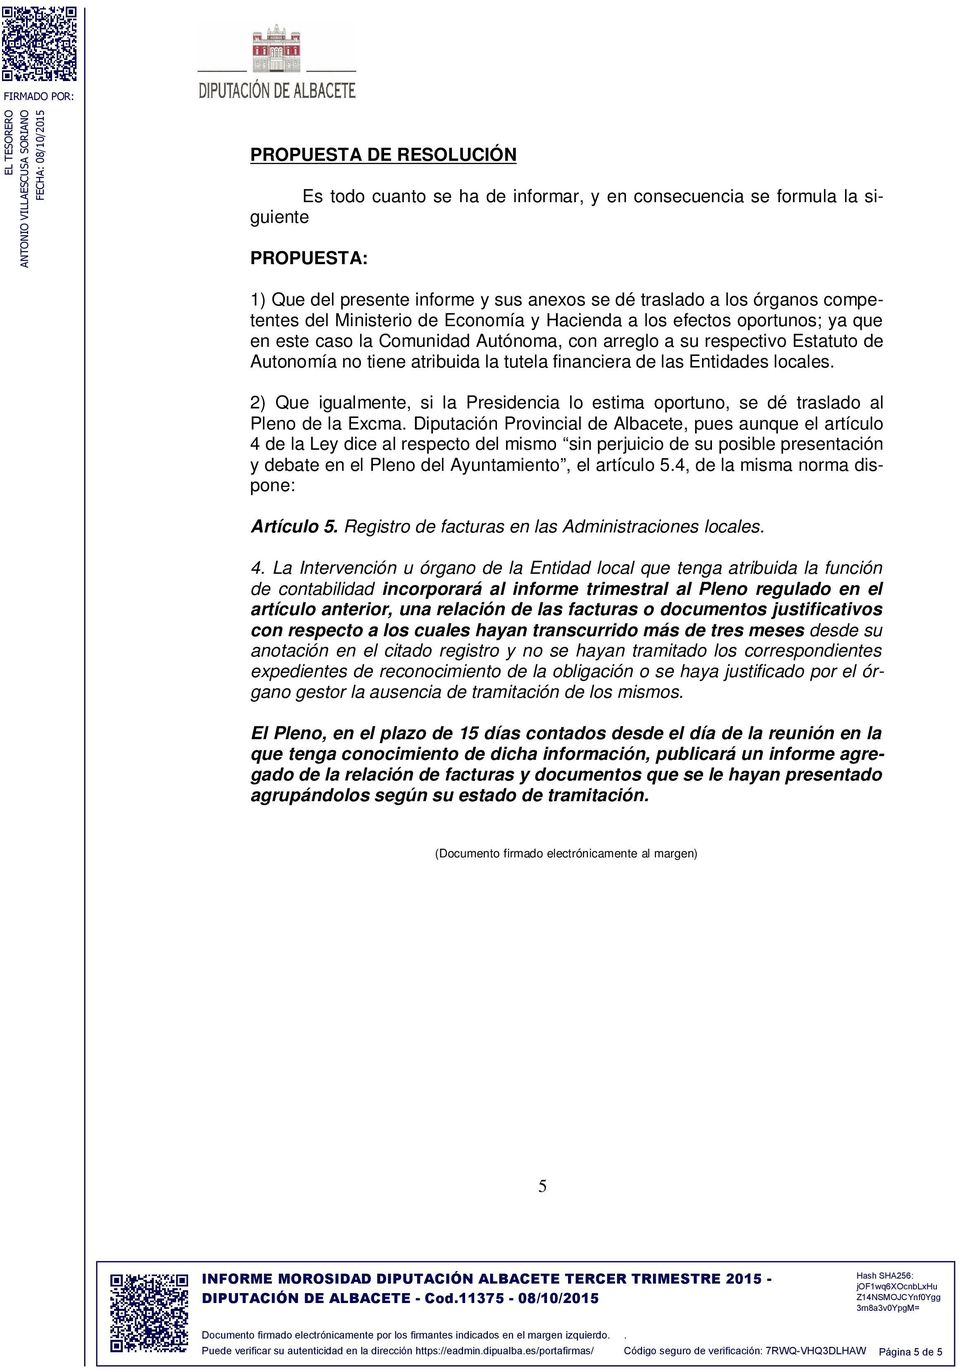 Entidades locales 2) Que igualmente, si la Presidencia lo estima oportuno, se dé traslado al Pleno de la Excma Diputación Provincial de Albacete, pues aunque el artículo 4 de la Ley dice al respecto